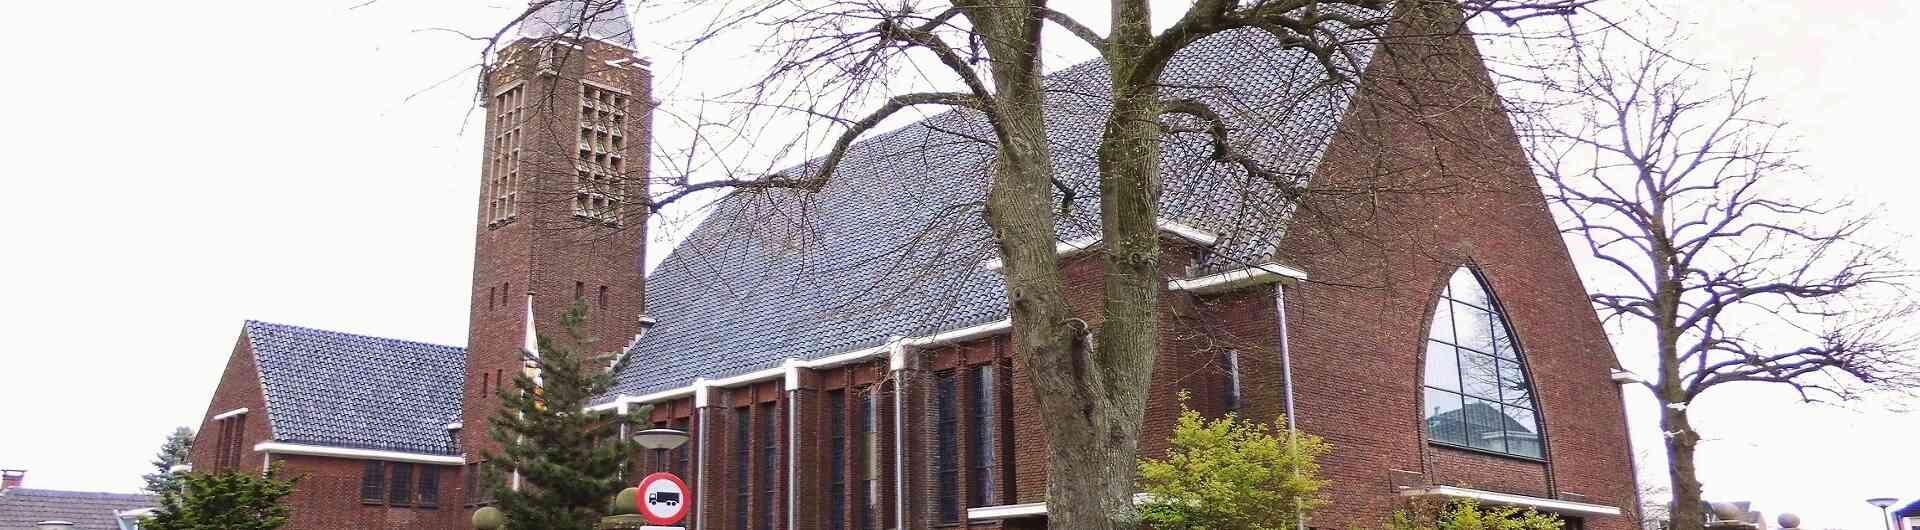 Oldenzaal hofkerk